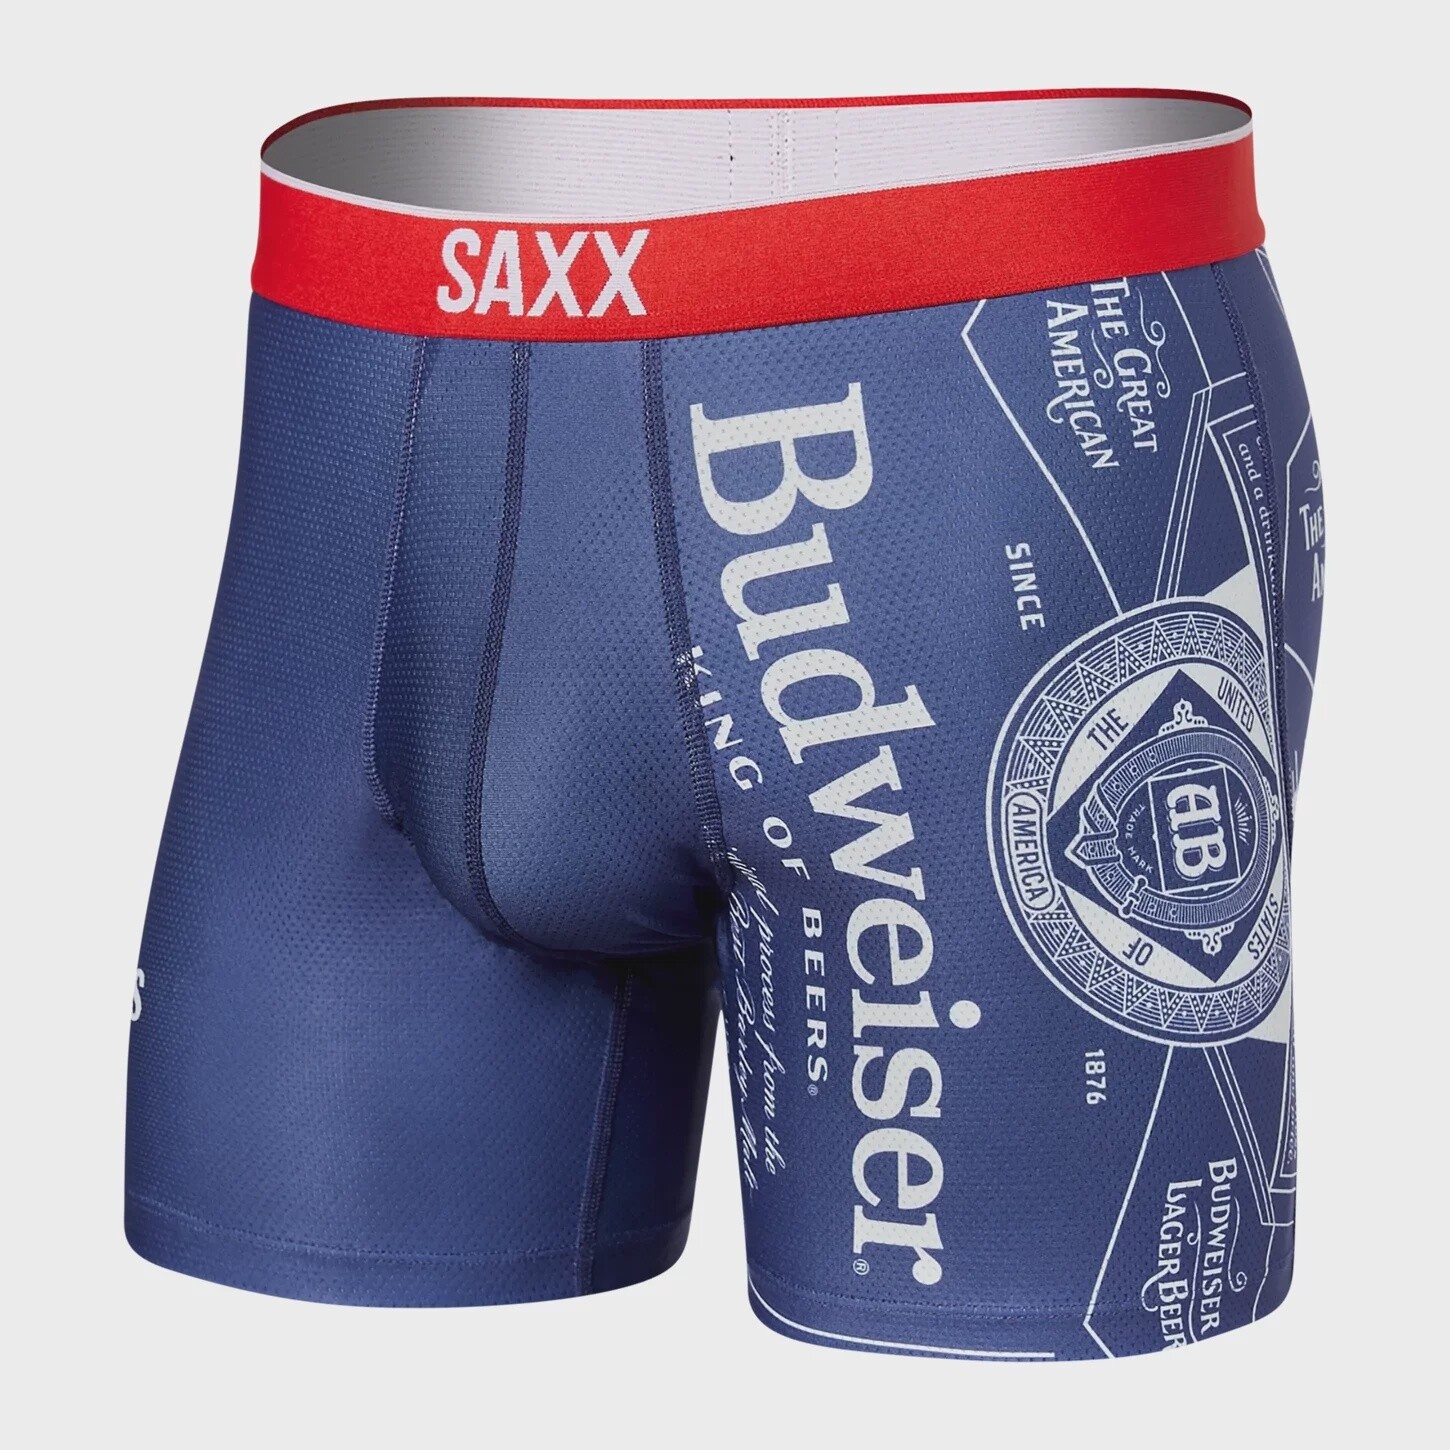 SAXX - Volt - Budweiser